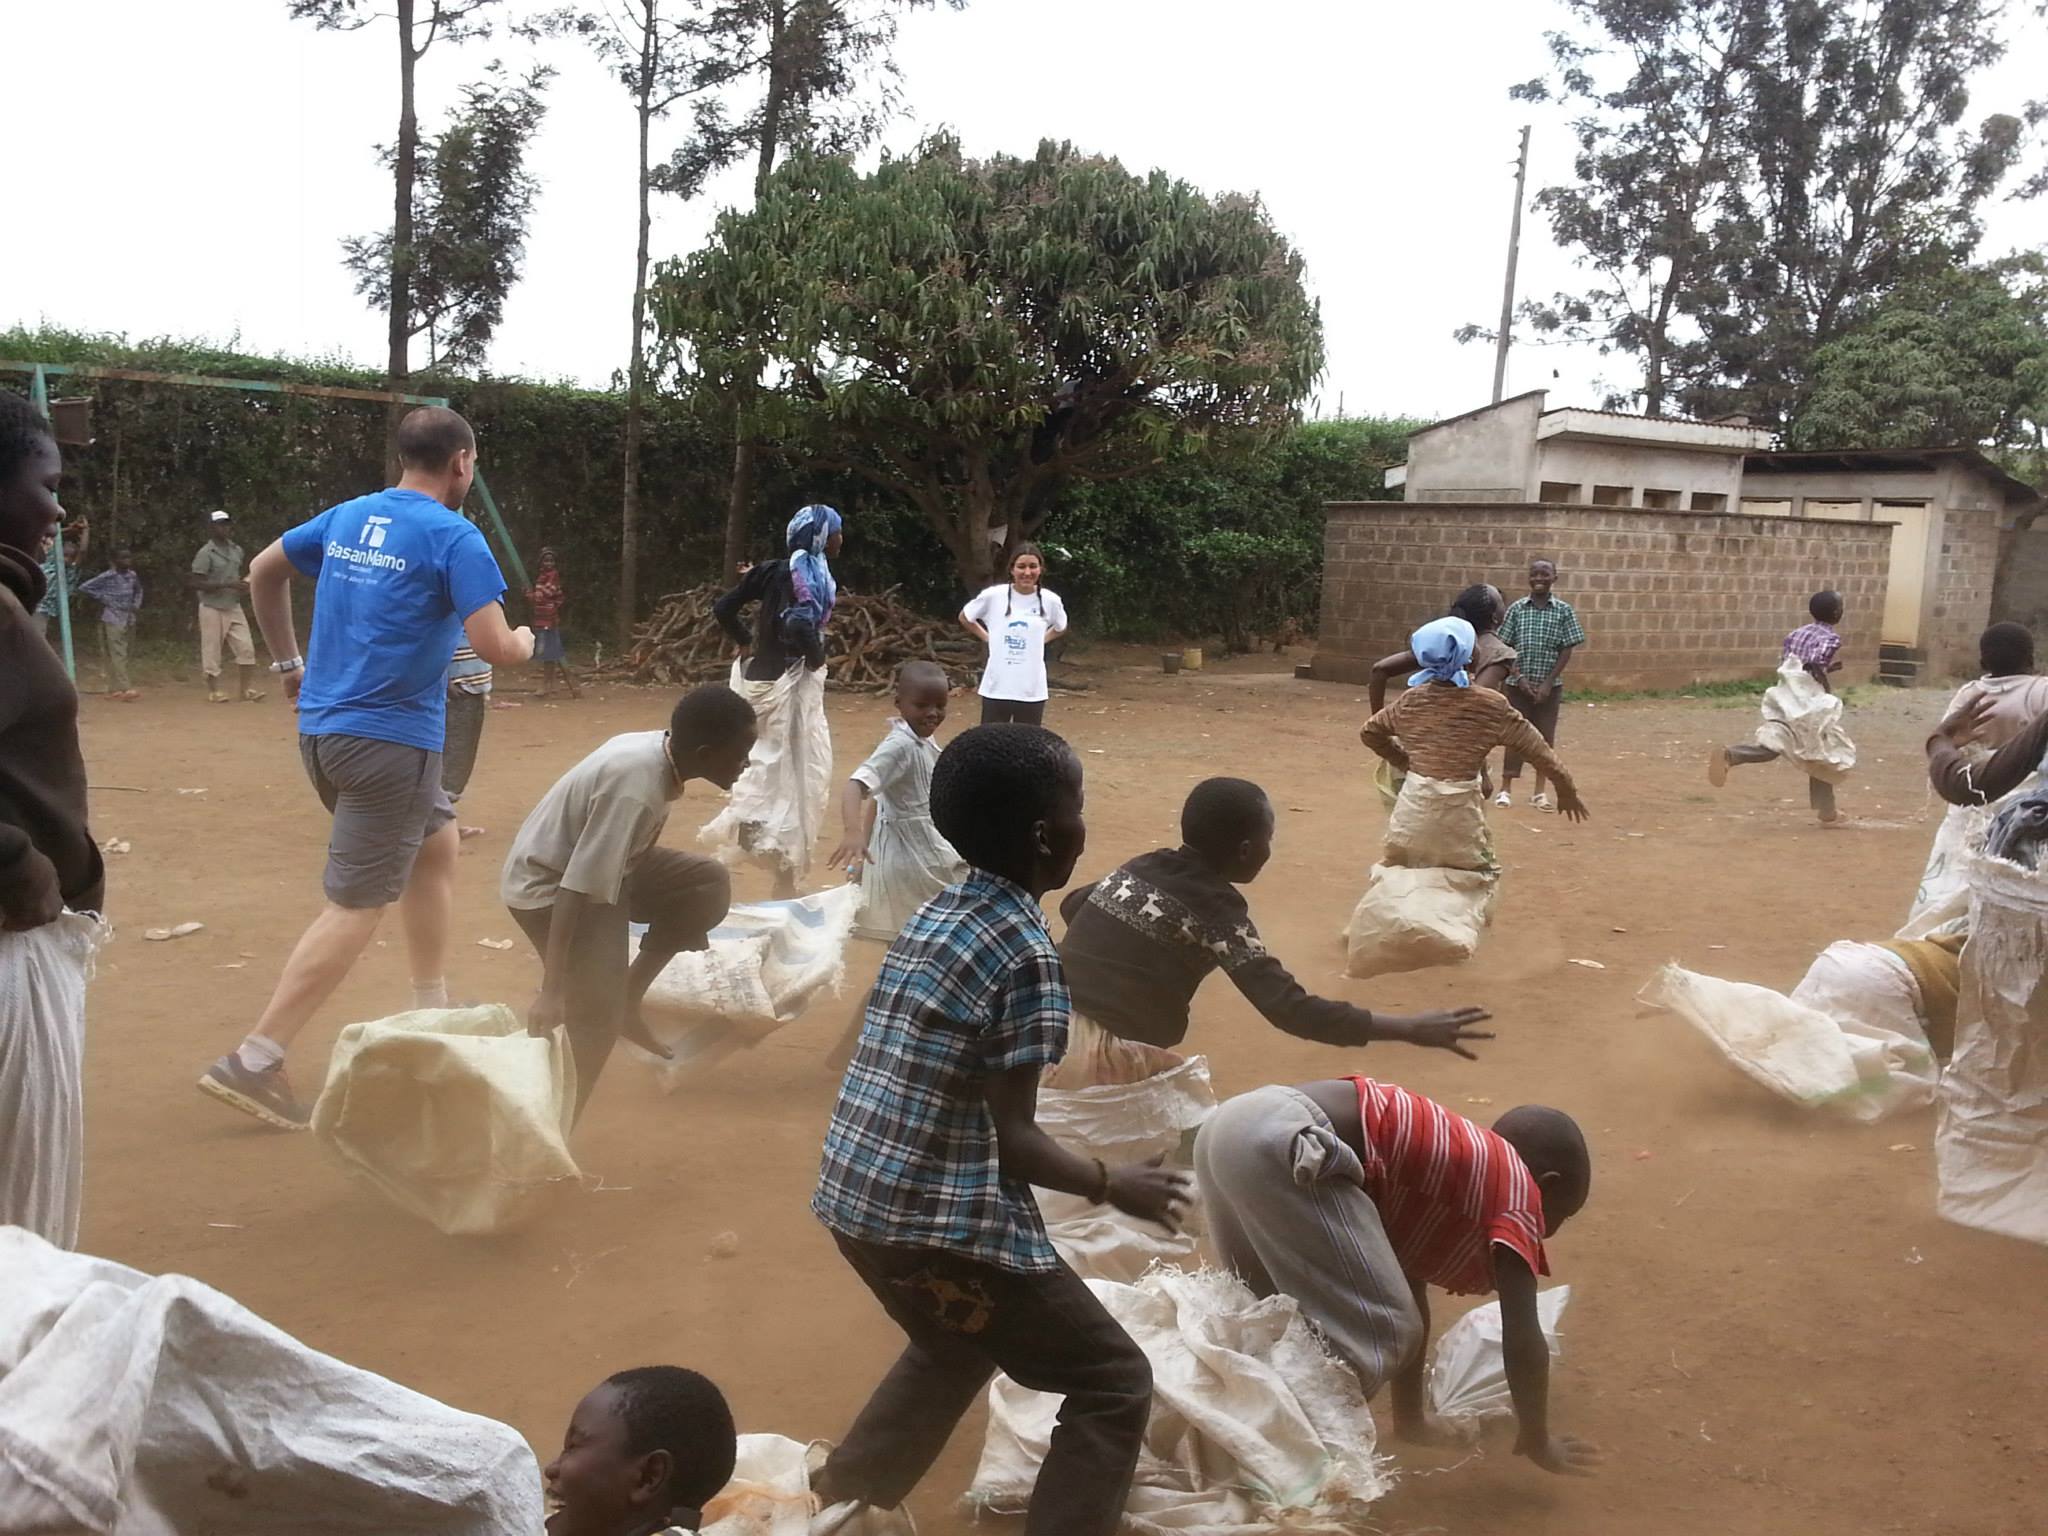 GasanMamo employee volunteers with Karibu in Kenya